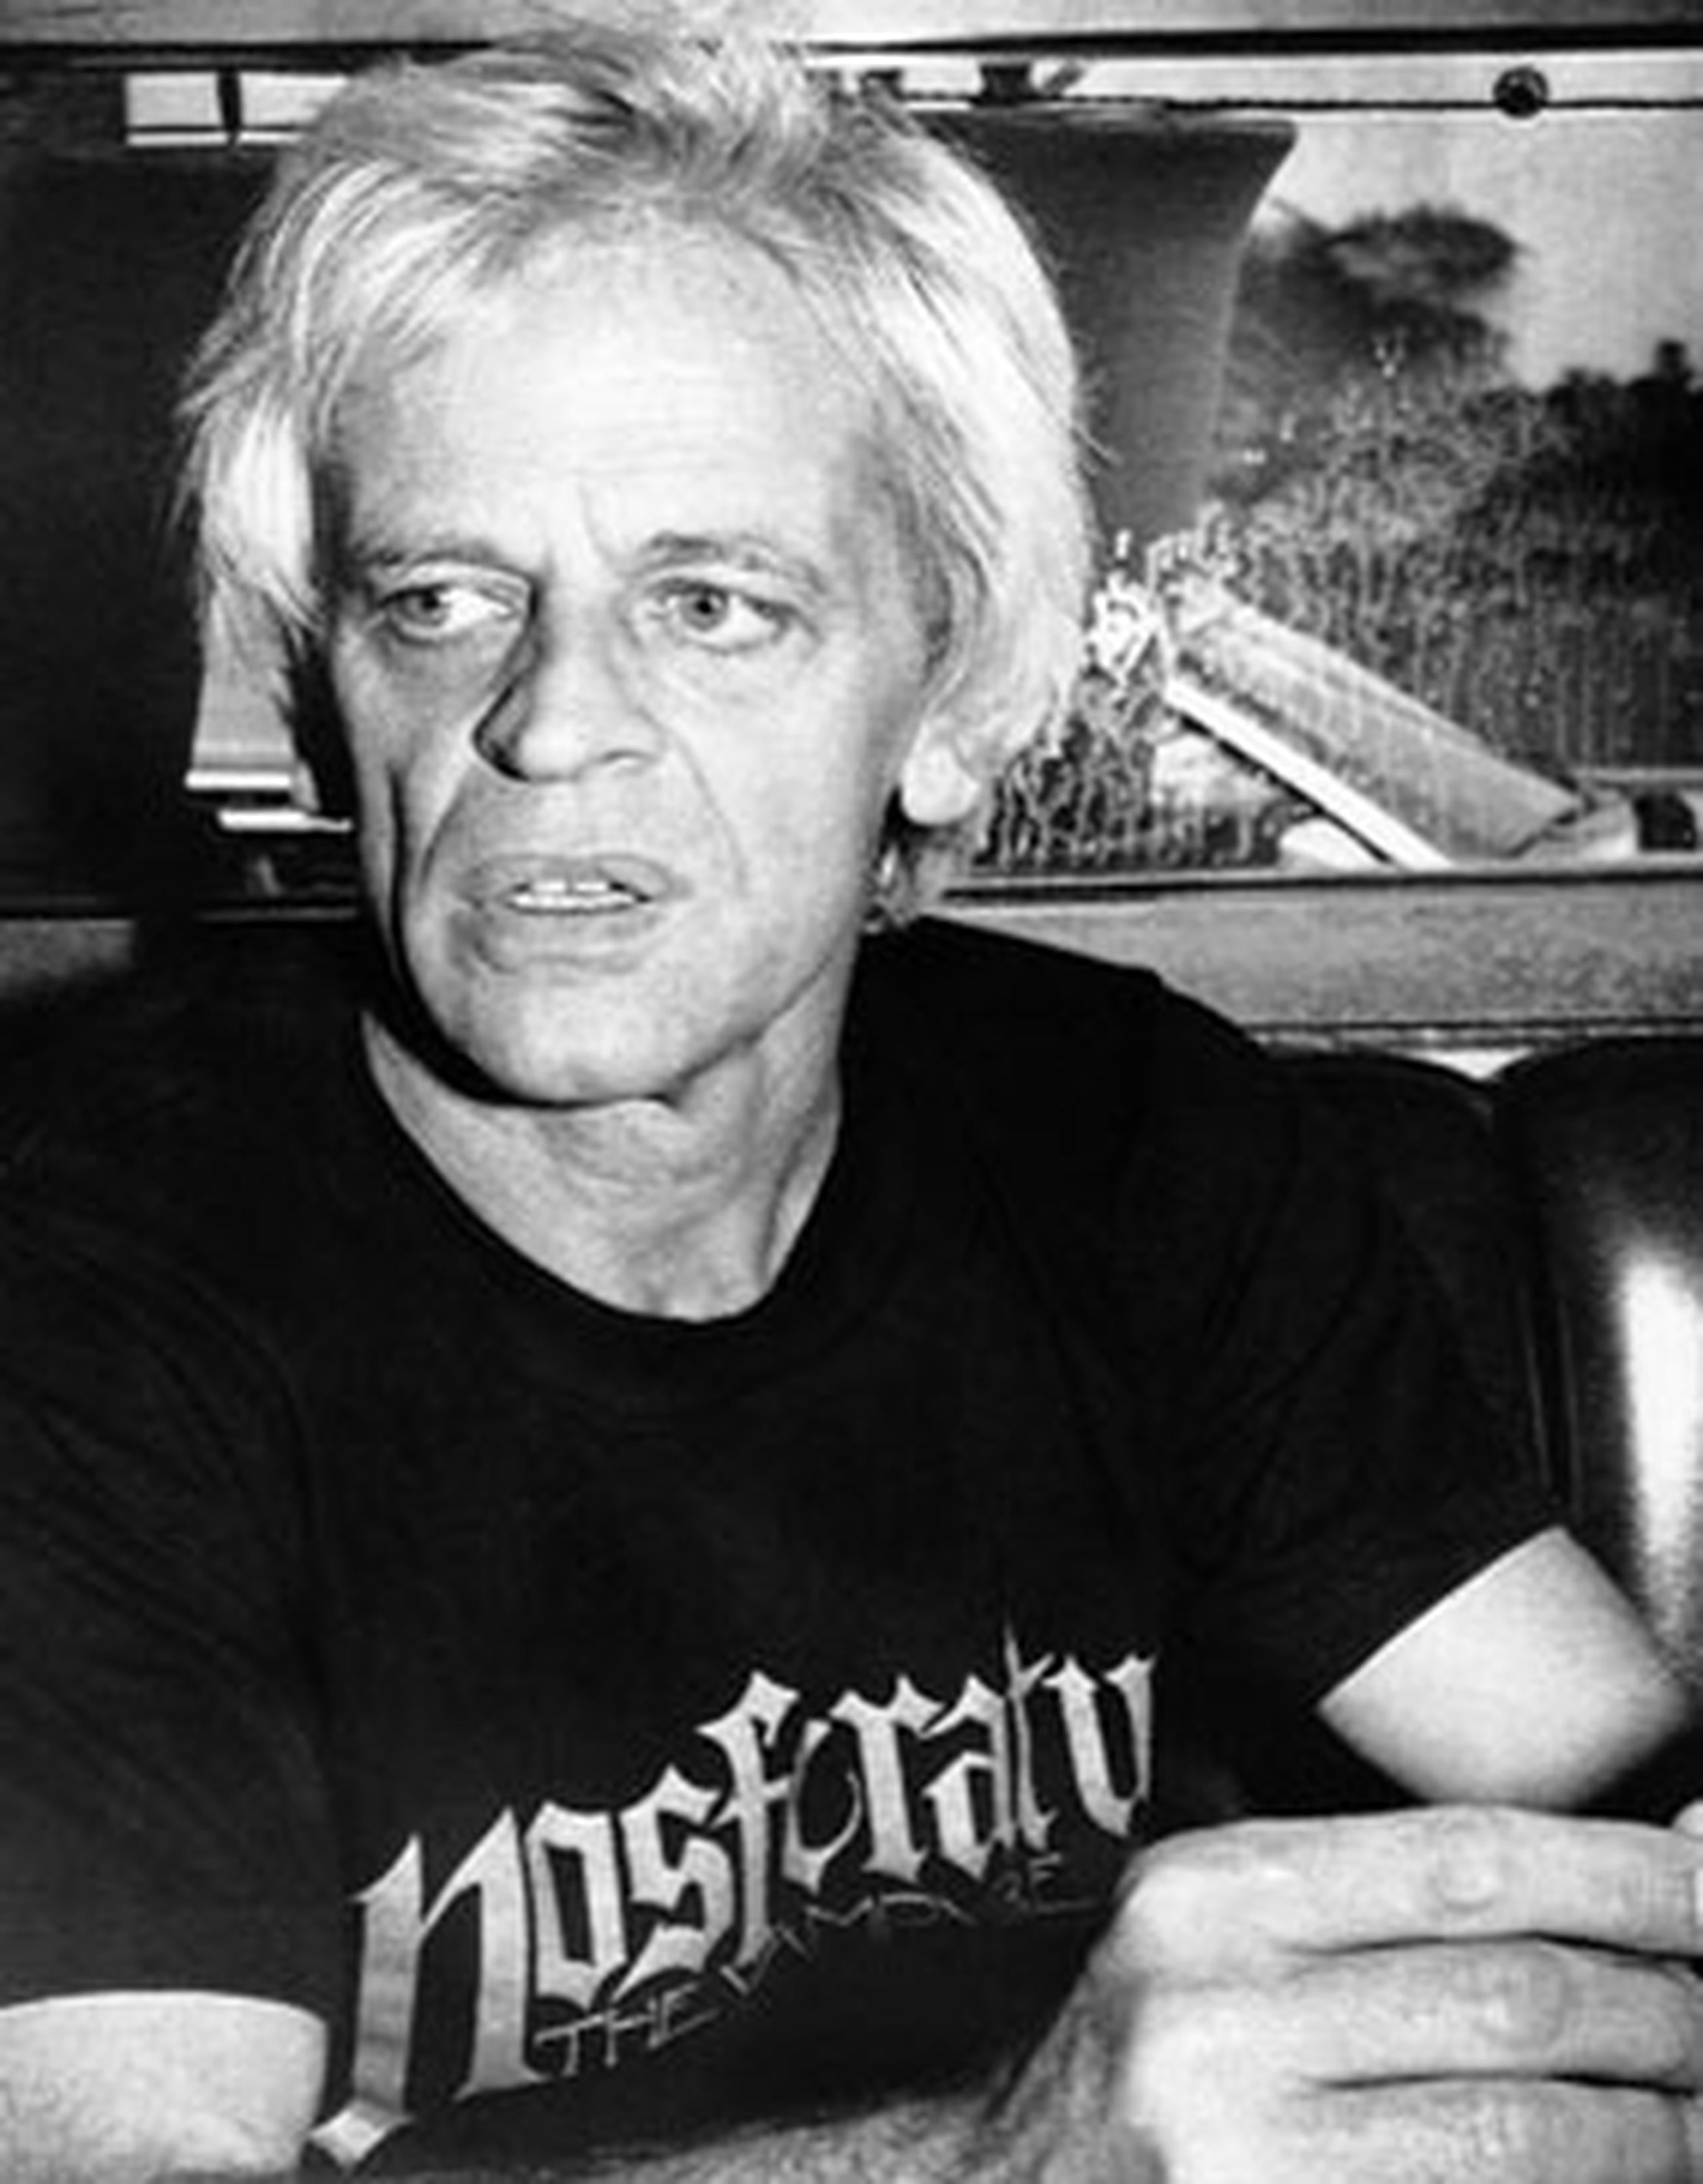 Klaus Kinski, murió de un ataque cardíaco en California hace 20 años, a los 65. El actor alemán protagonizó películas como "Doctor Zhivago" y "Nosferatu, vampiro de la noche". (AP)